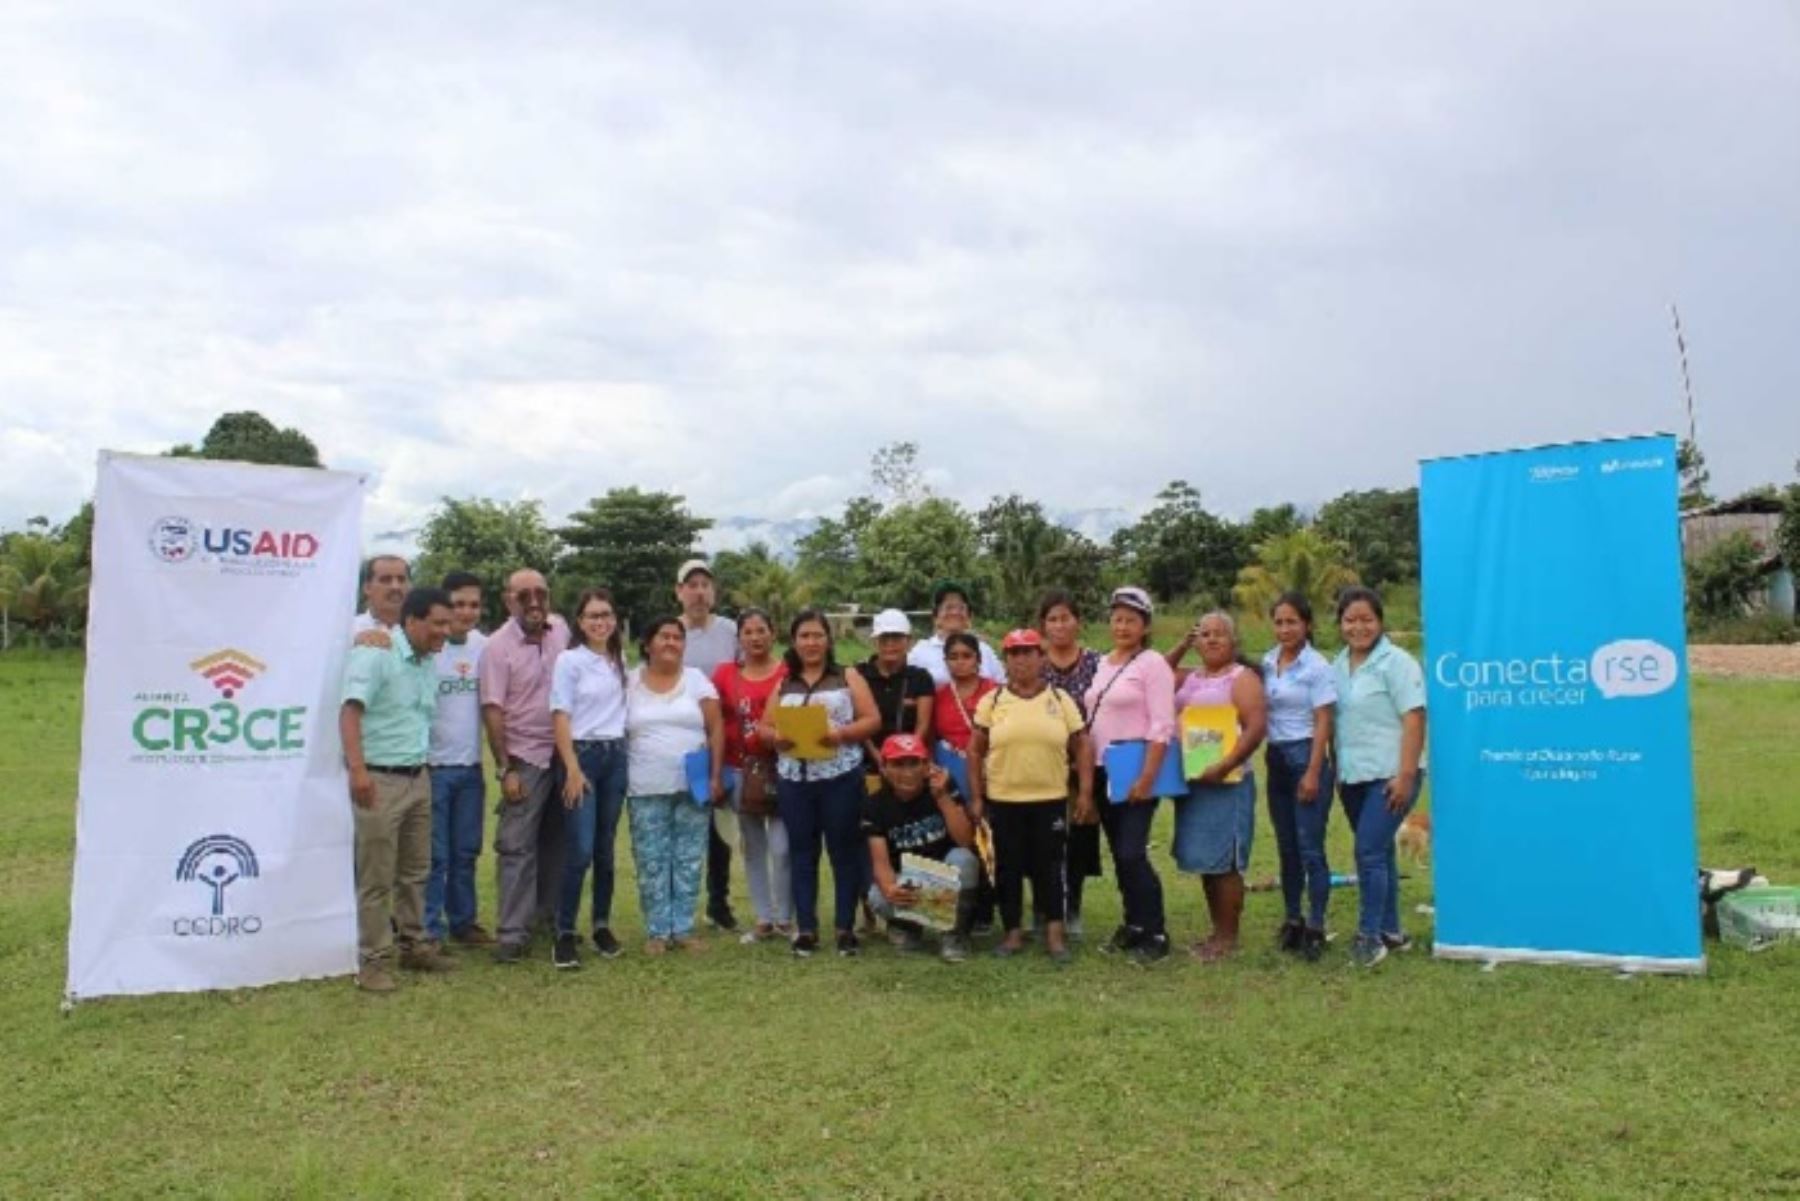 En lo que va del 2019, en 25 localidades rurales de las regiones San Martín y Huánuco, Telefónica Movistar y Cedro han dictado talleres de actualización en Tecnologías de la Información y Comunicación (TIC), en el marco de la IX Edición del Premio ConectaRSE para Crecer.